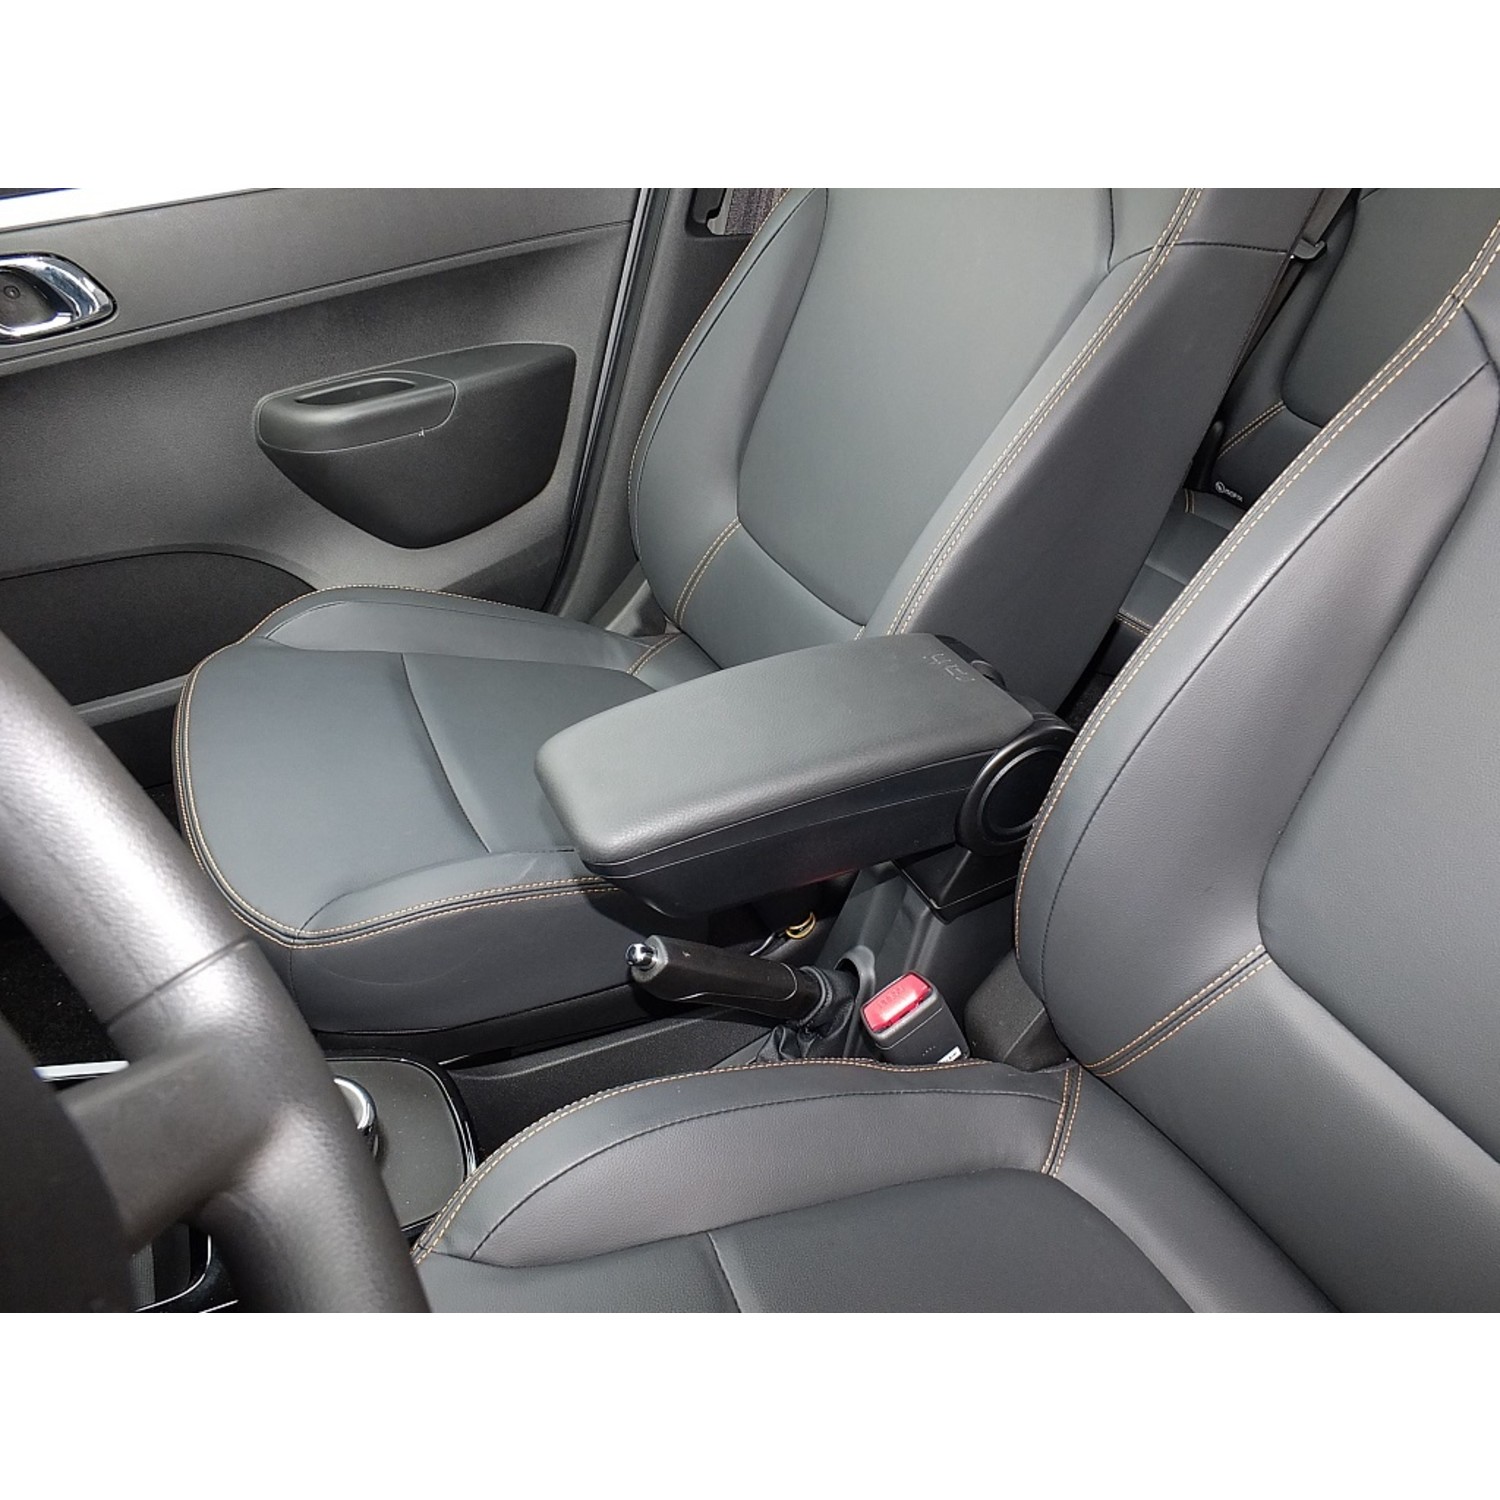 Maßgefertigter Sitzbezug Exclusive für VW Golf - Maluch Premium Autozubehör